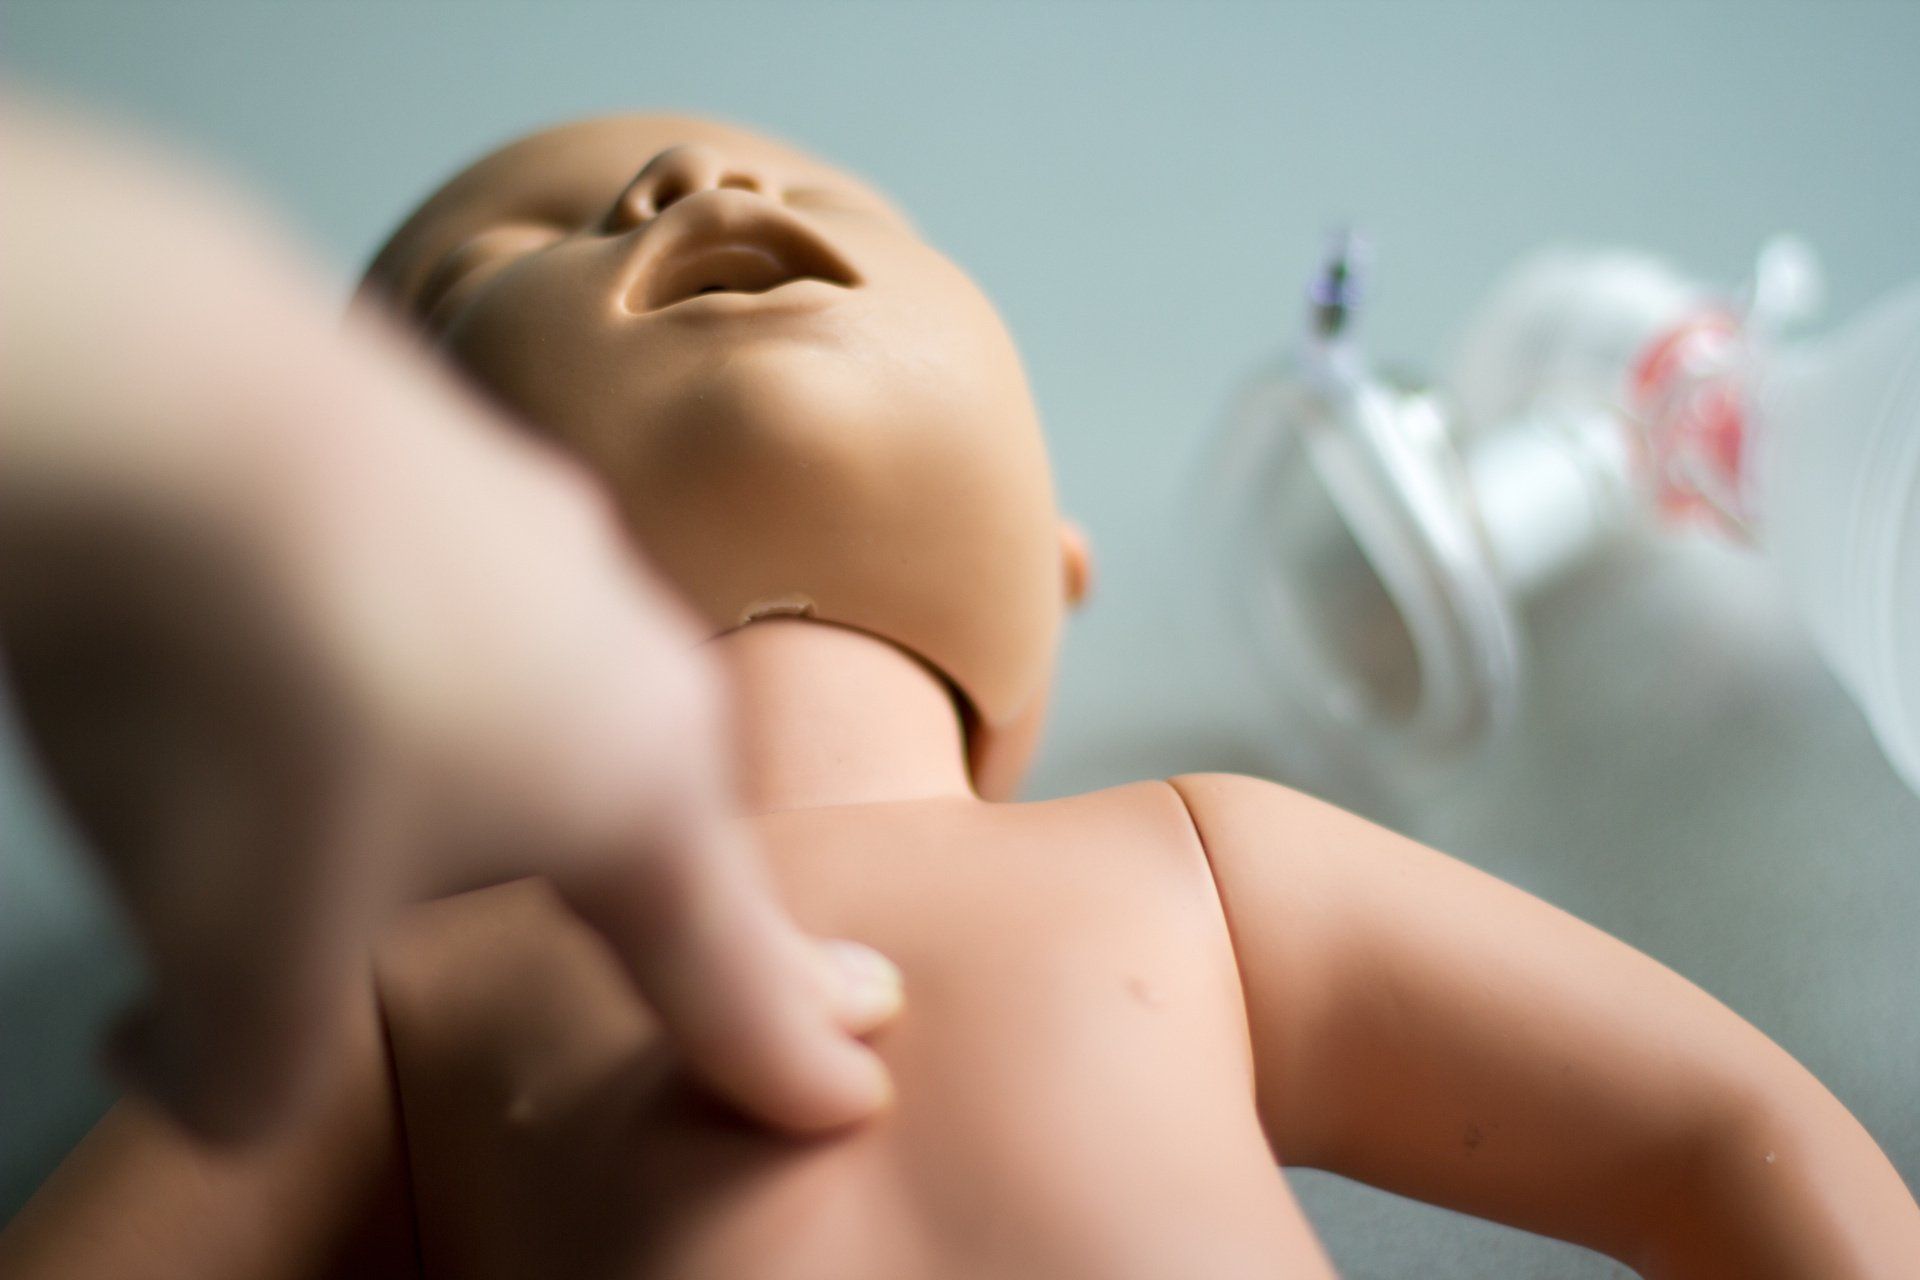 Herzdruckmassage bei einem Säugling